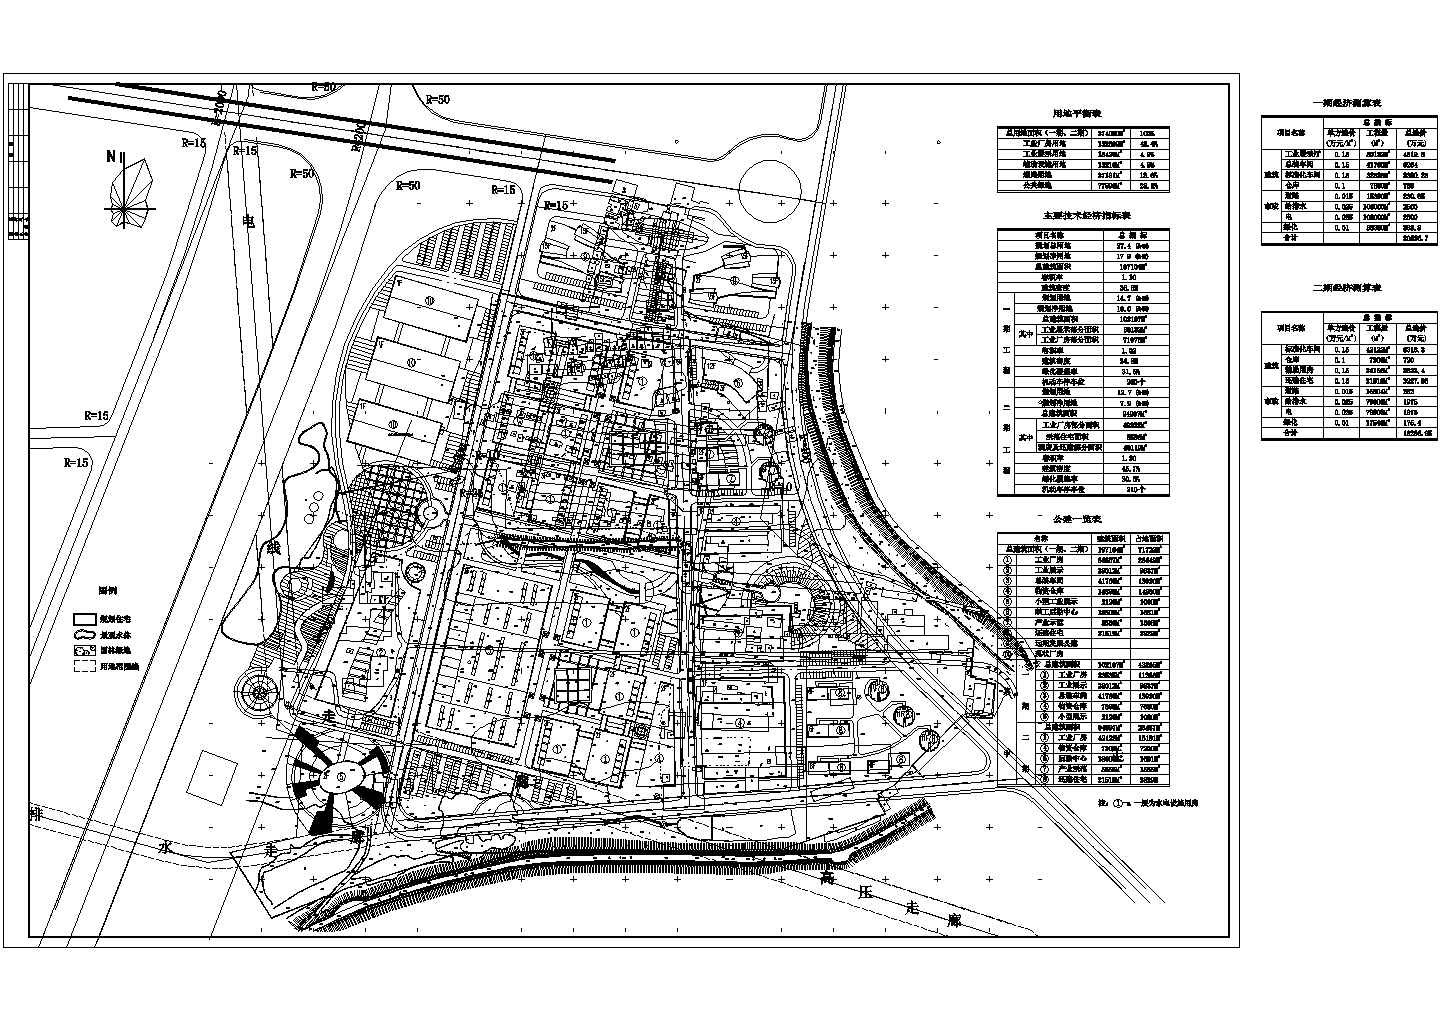 北方某重工业园区设计规划总平面图